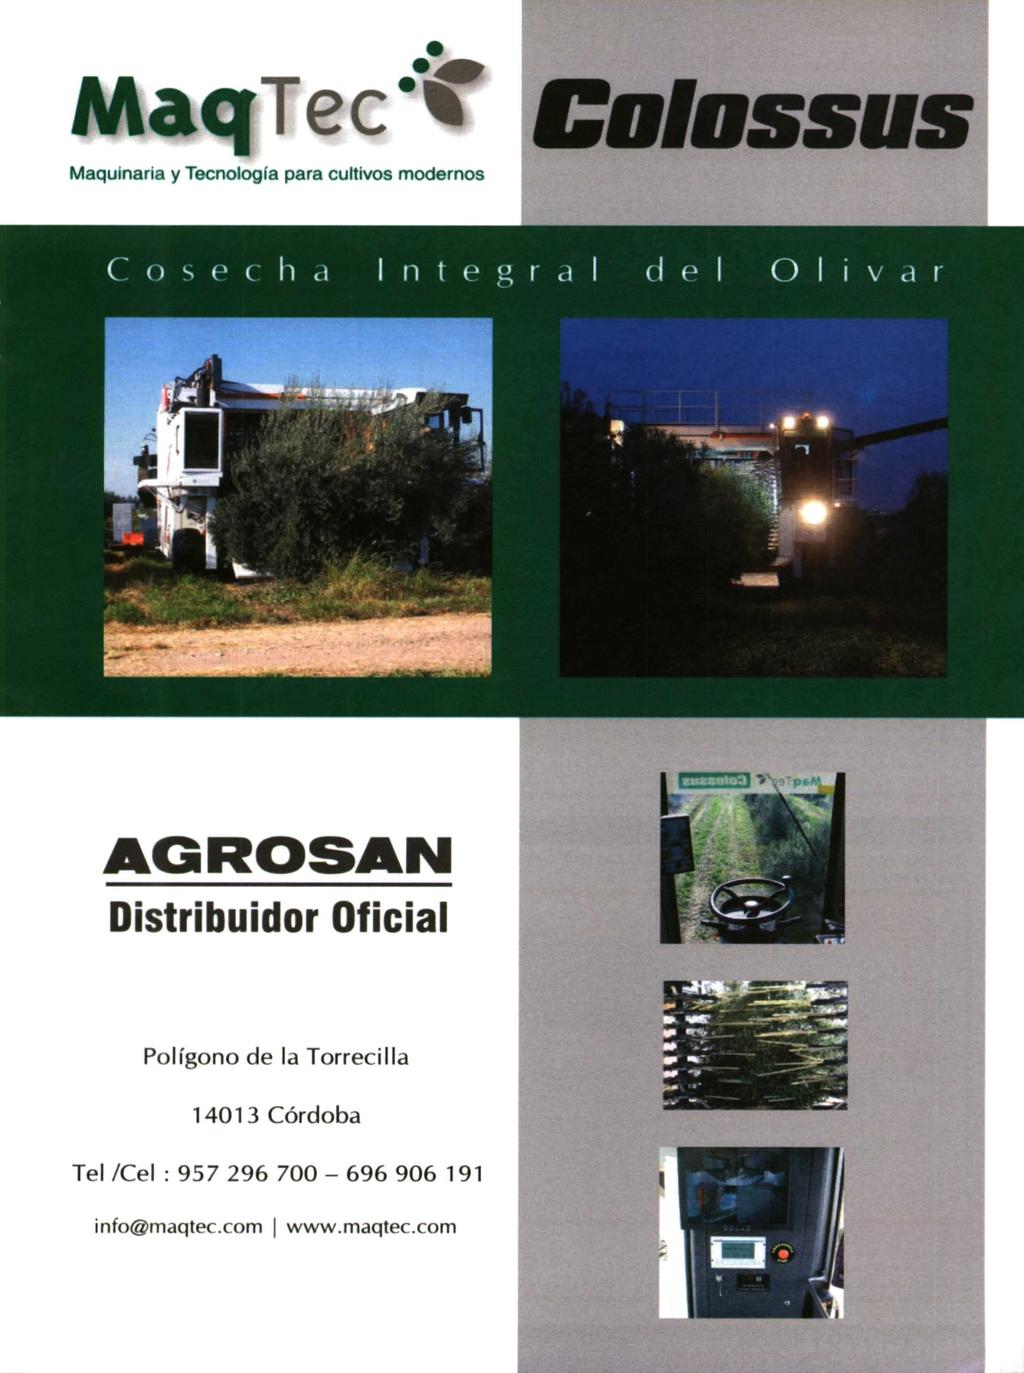 MaciTec't Maquinaria y Tecnología para cultivos modernos AGROSAN Distribuidor Oficial Polígono